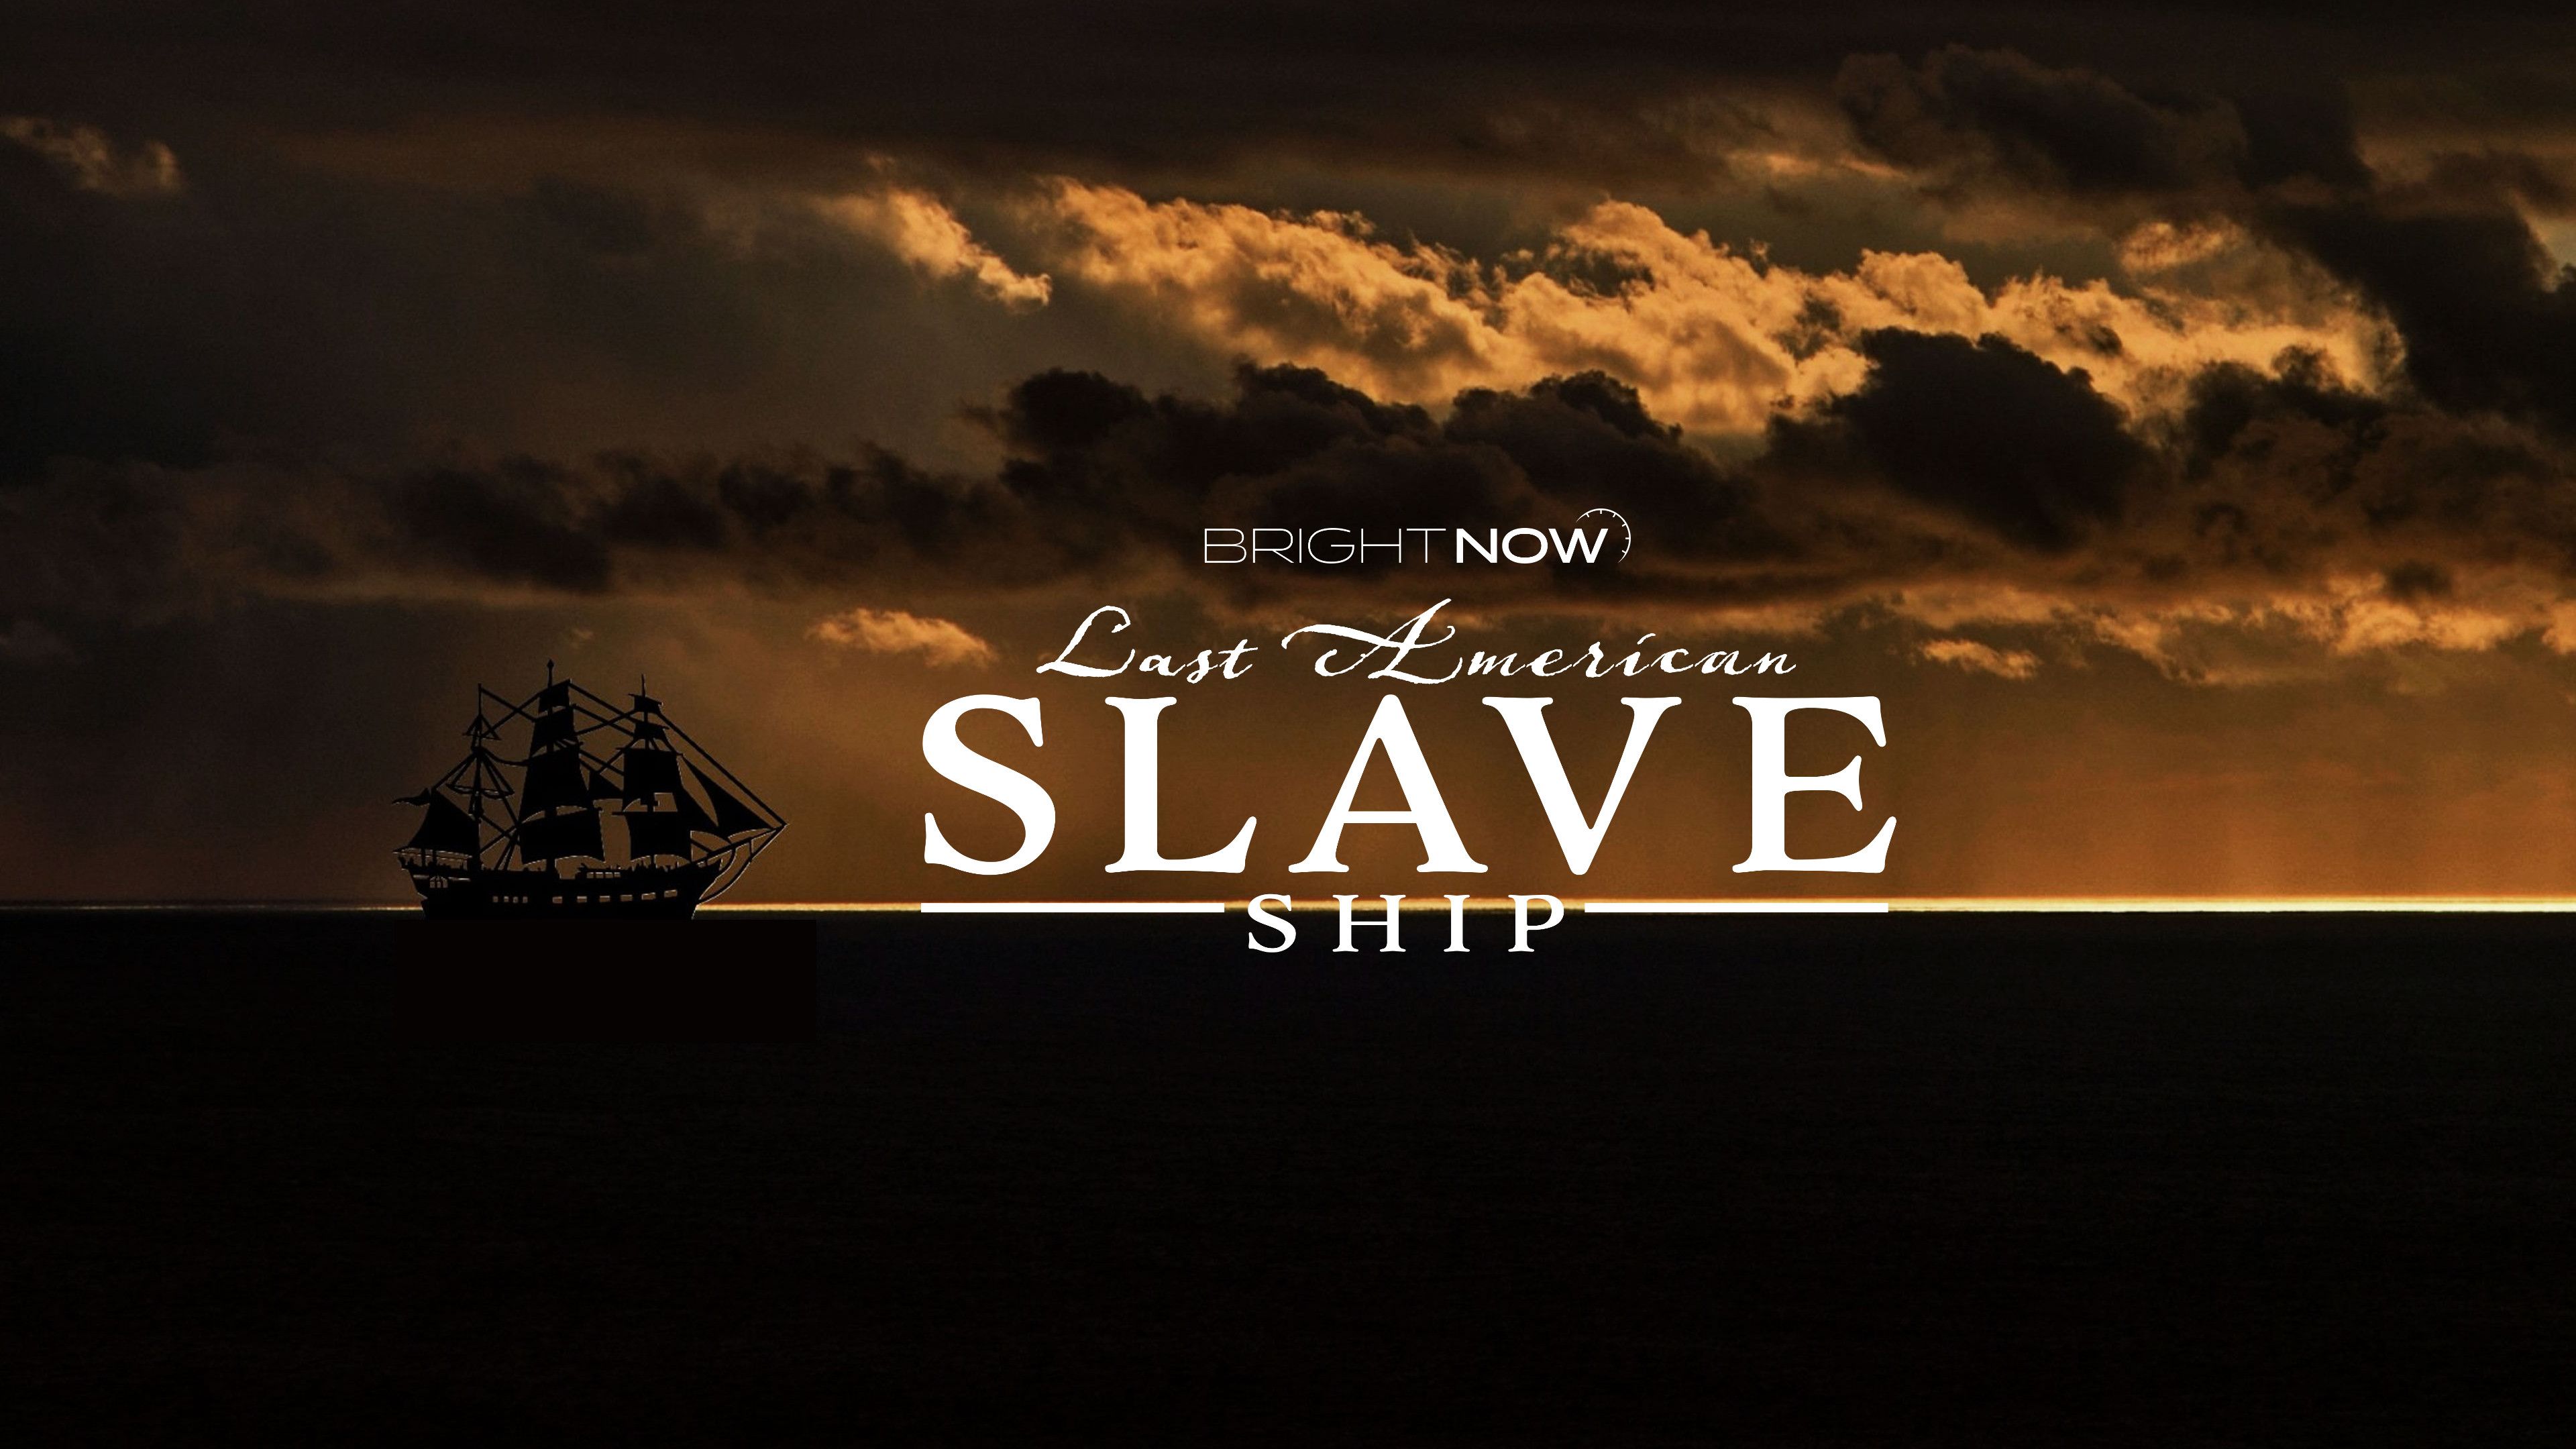 Last American Slave Ship